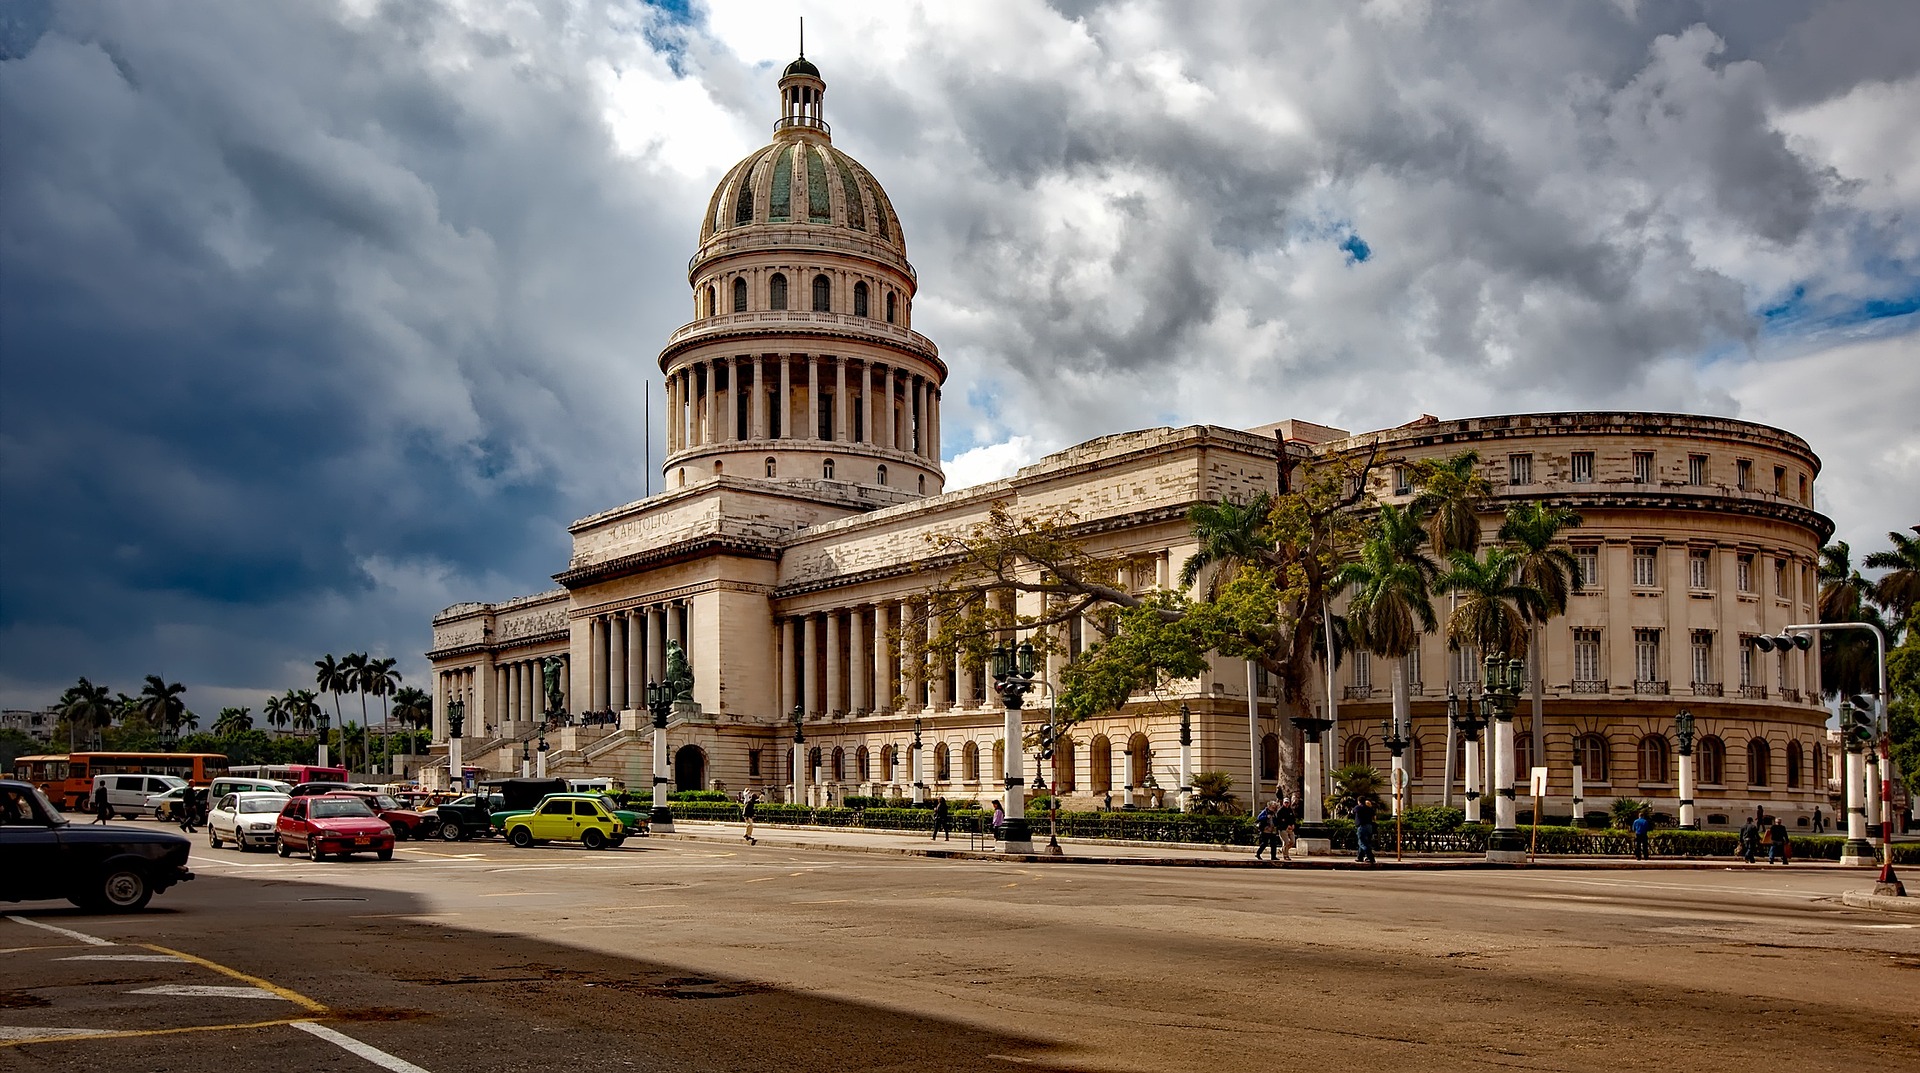 Гавана – встреча с культурой, историей, восхитительной архитектурой и советы путешественникам